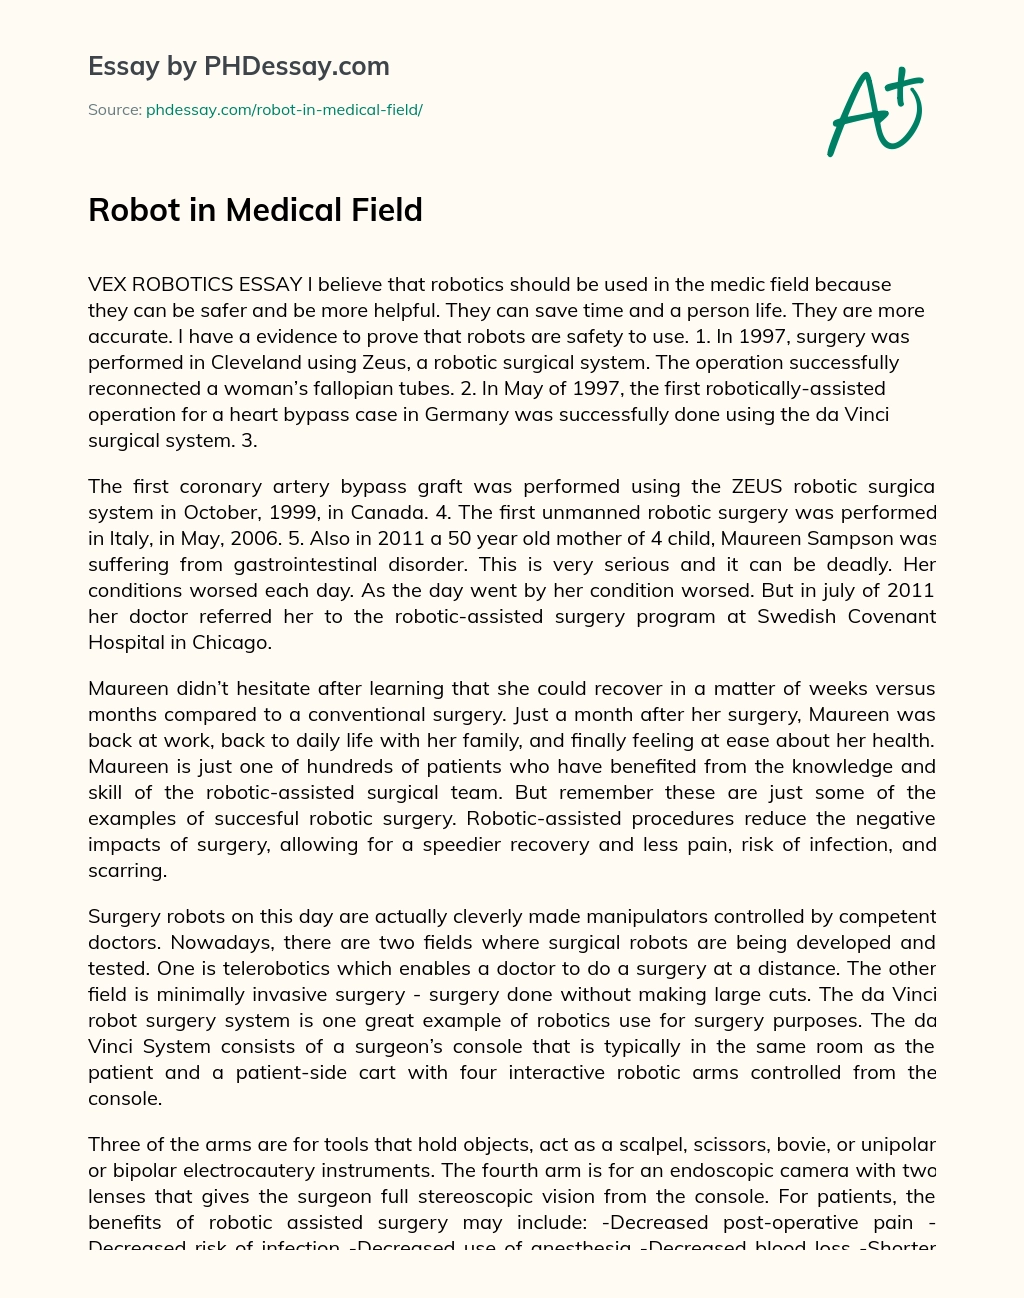 Robot in Medical Field essay